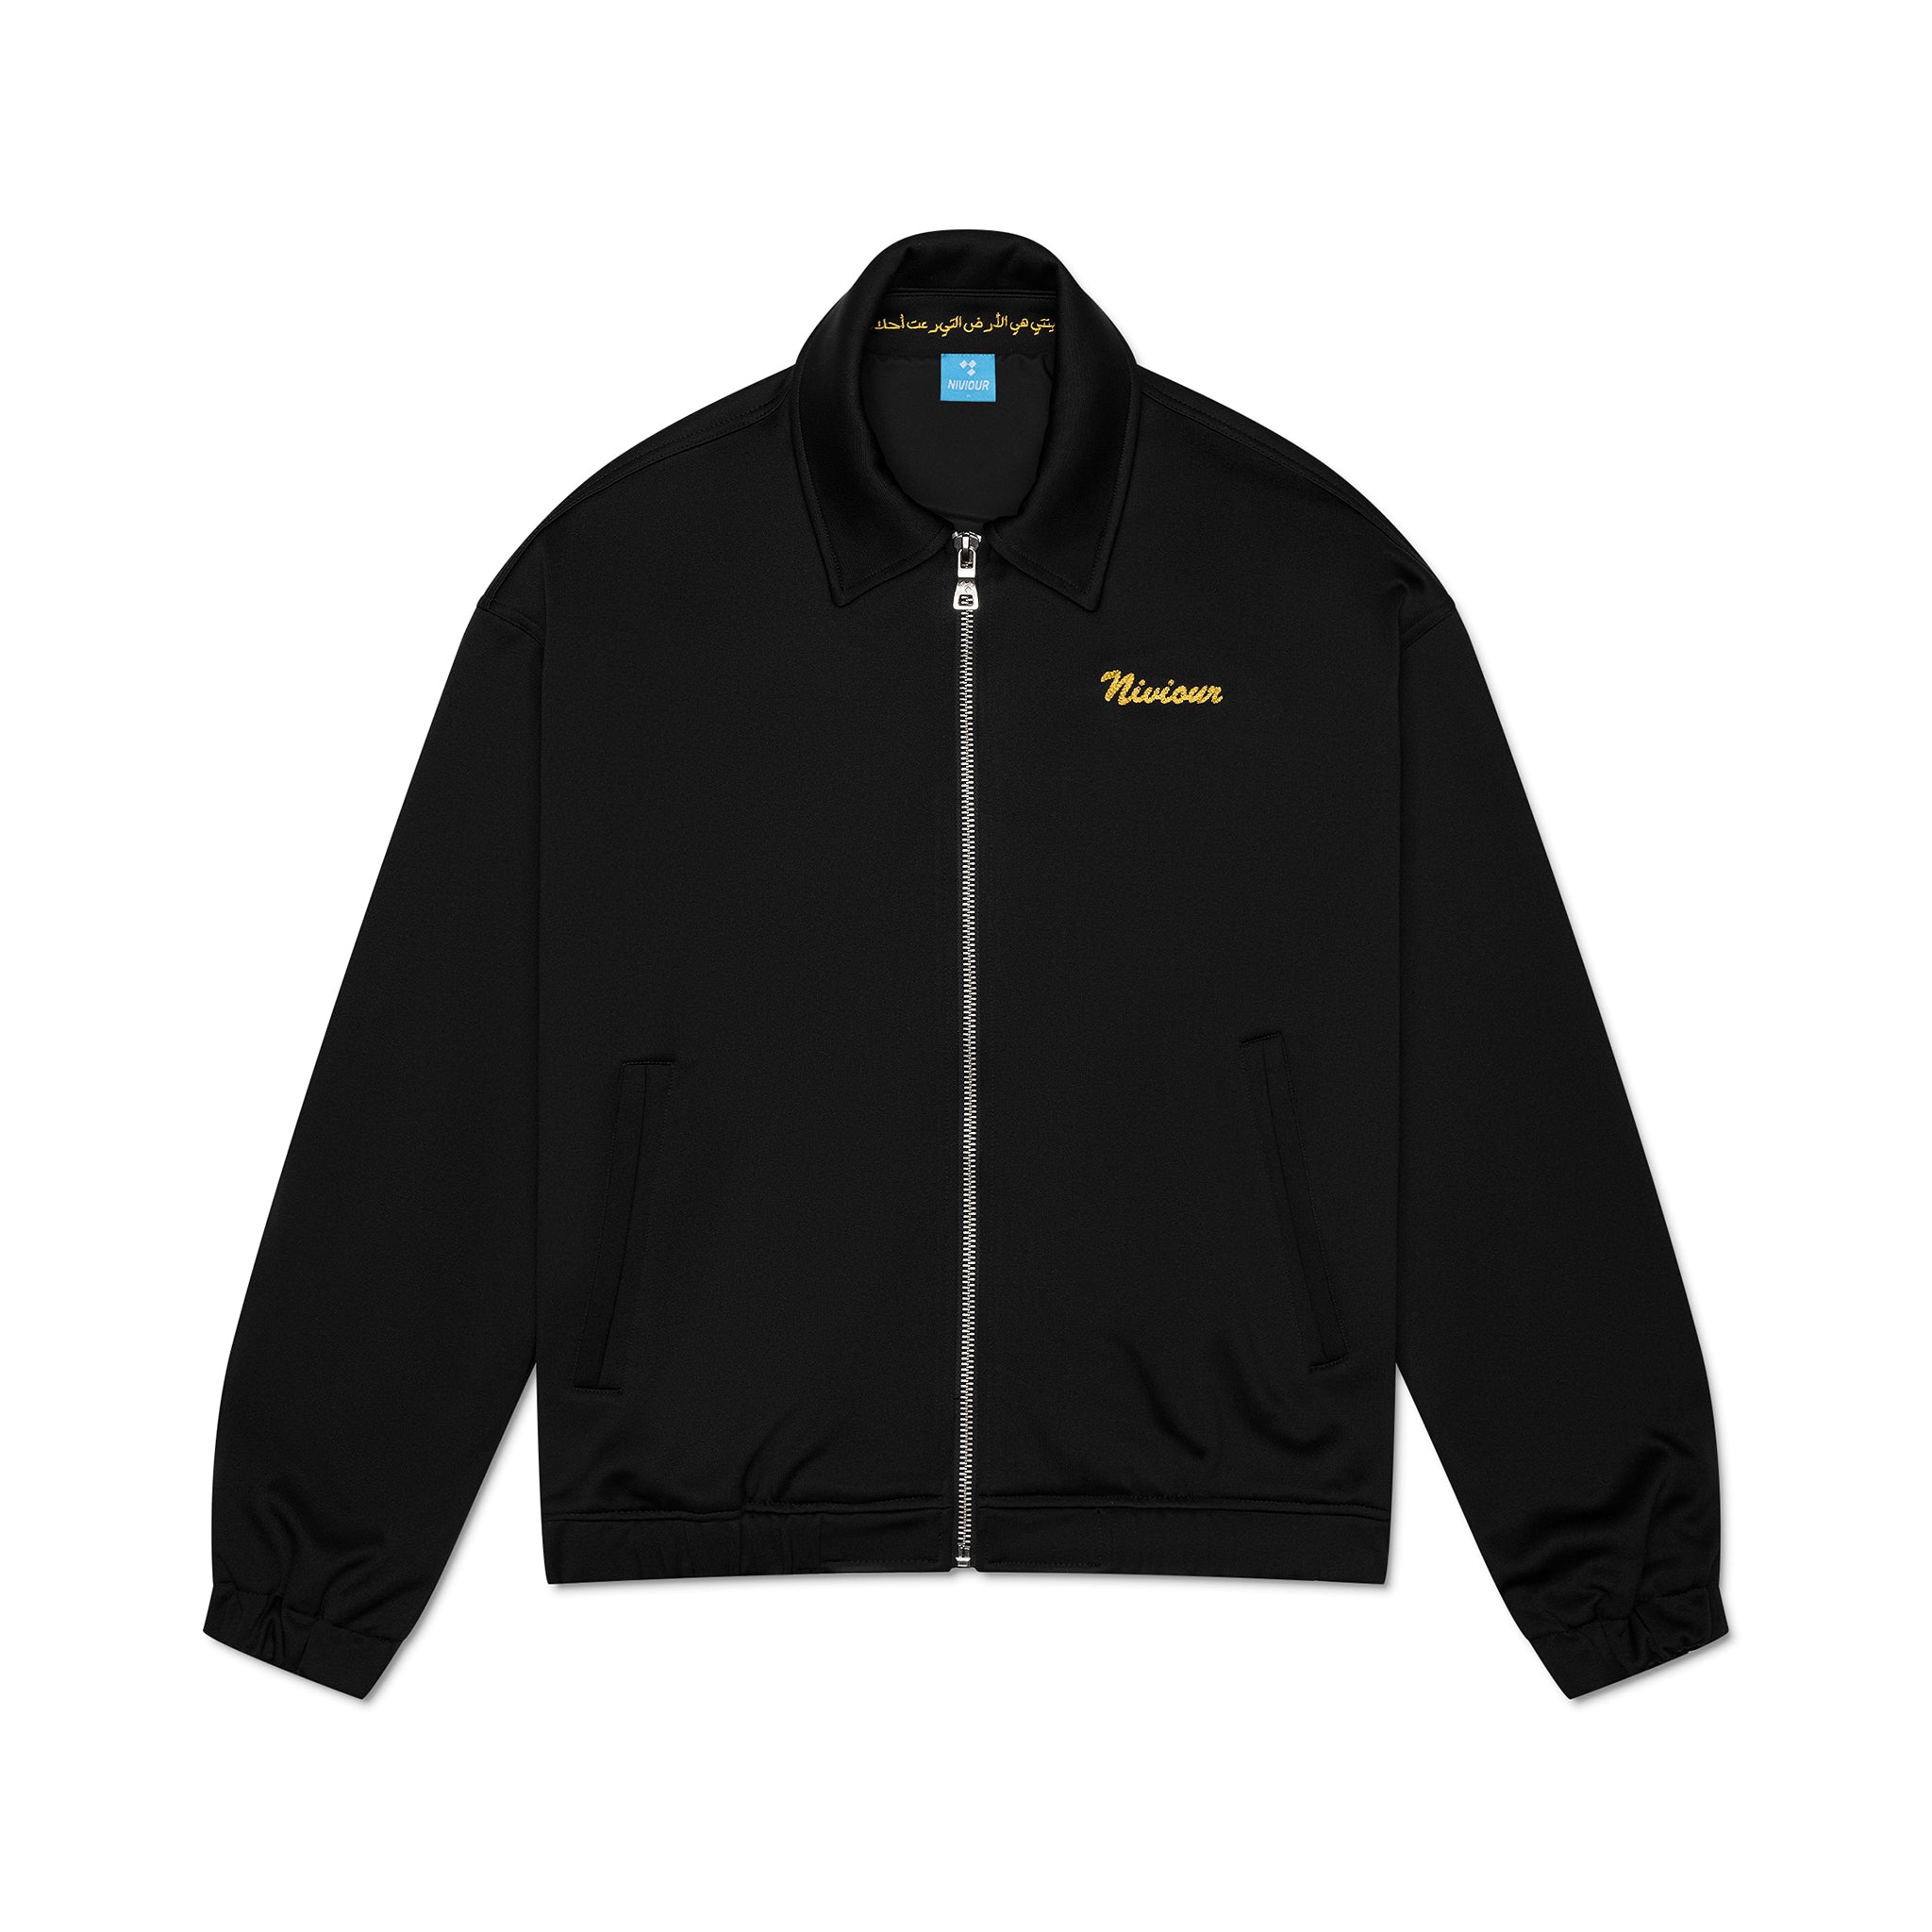 Coach's Jacket — Sunnyside